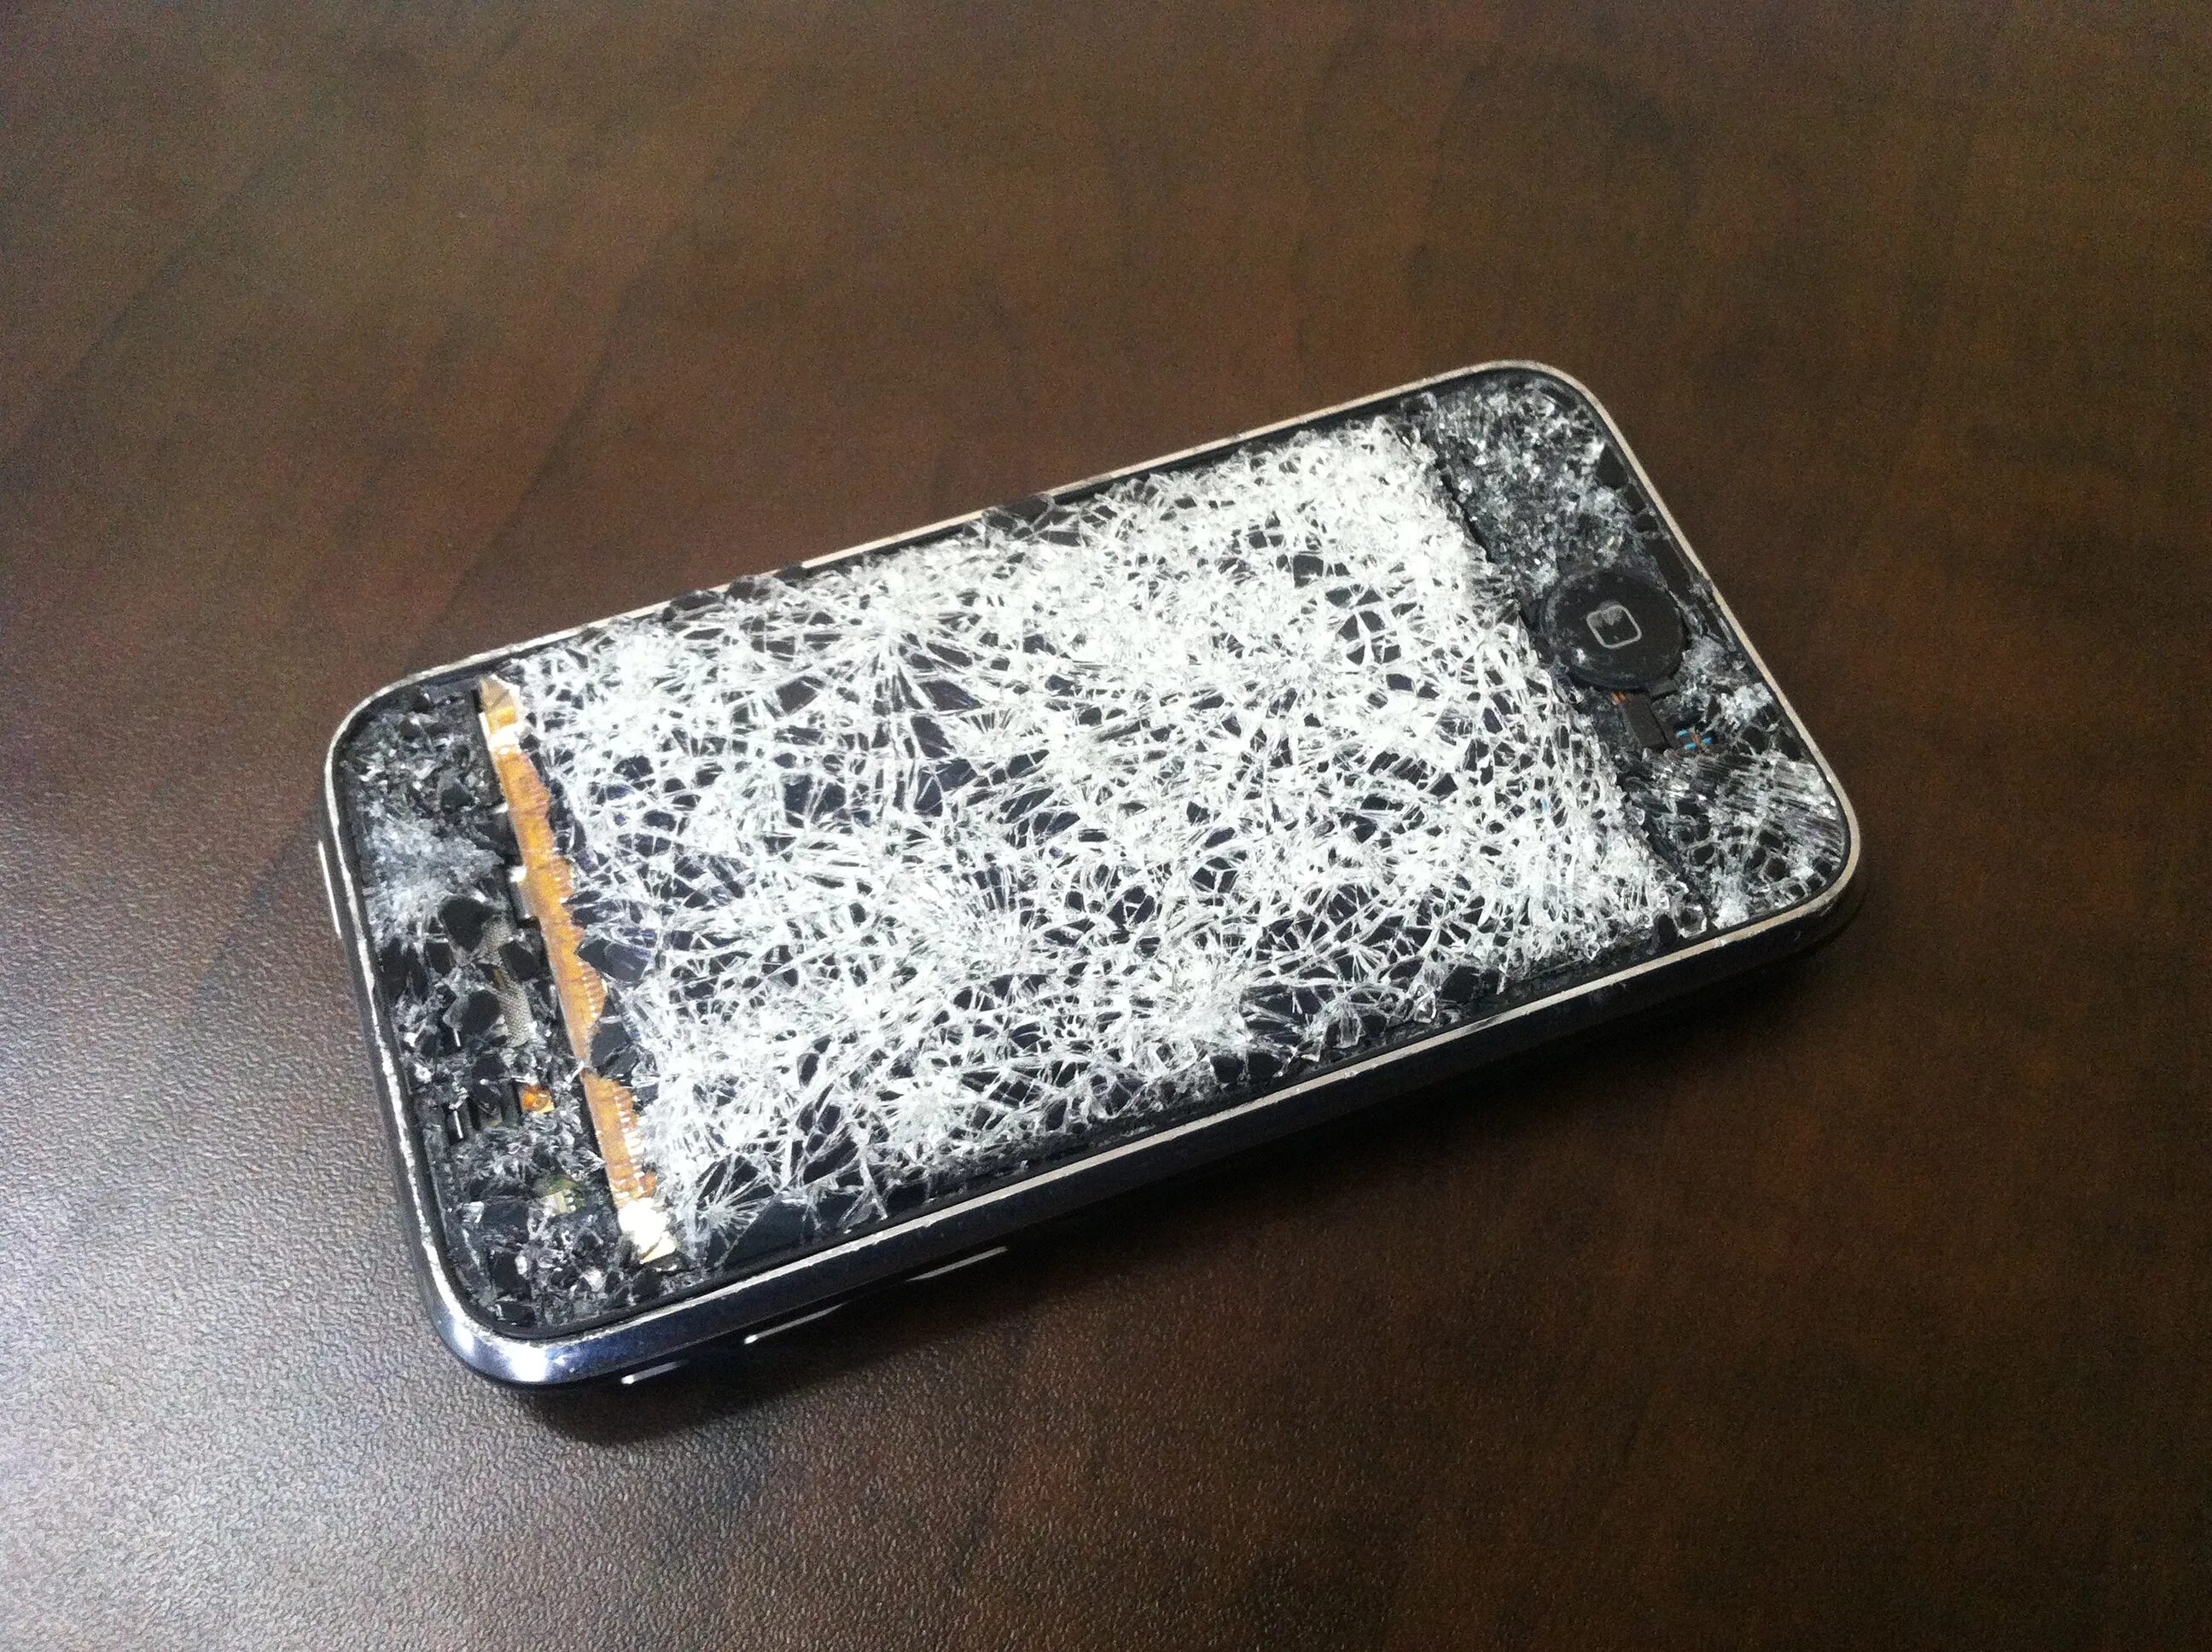 Купить телефон не разбиваемый. Разбитый телефон. Разбитый смартфон. Разбитые телефоны. Сломанный телефон.